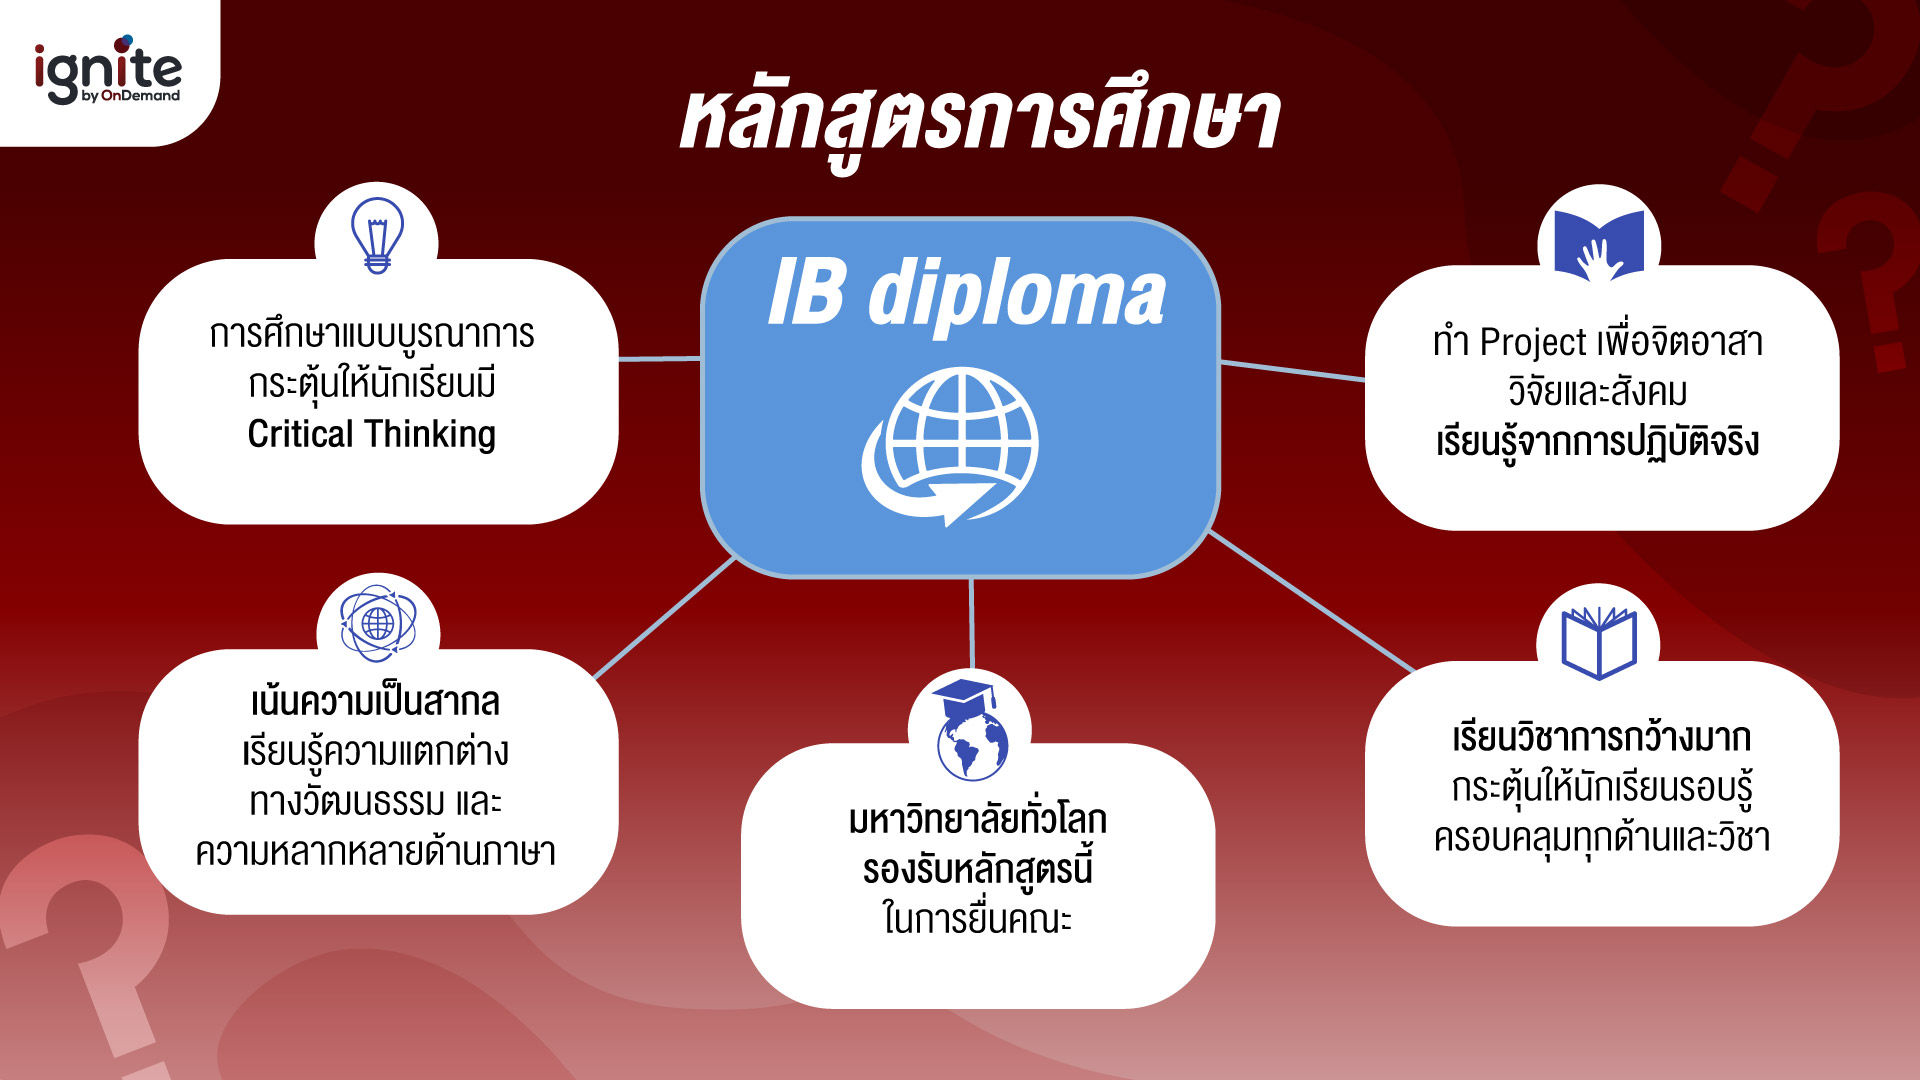 หลักสูตร IB diploma - ในระบบการเรียนแบบนานาชาติ - Bigcover4